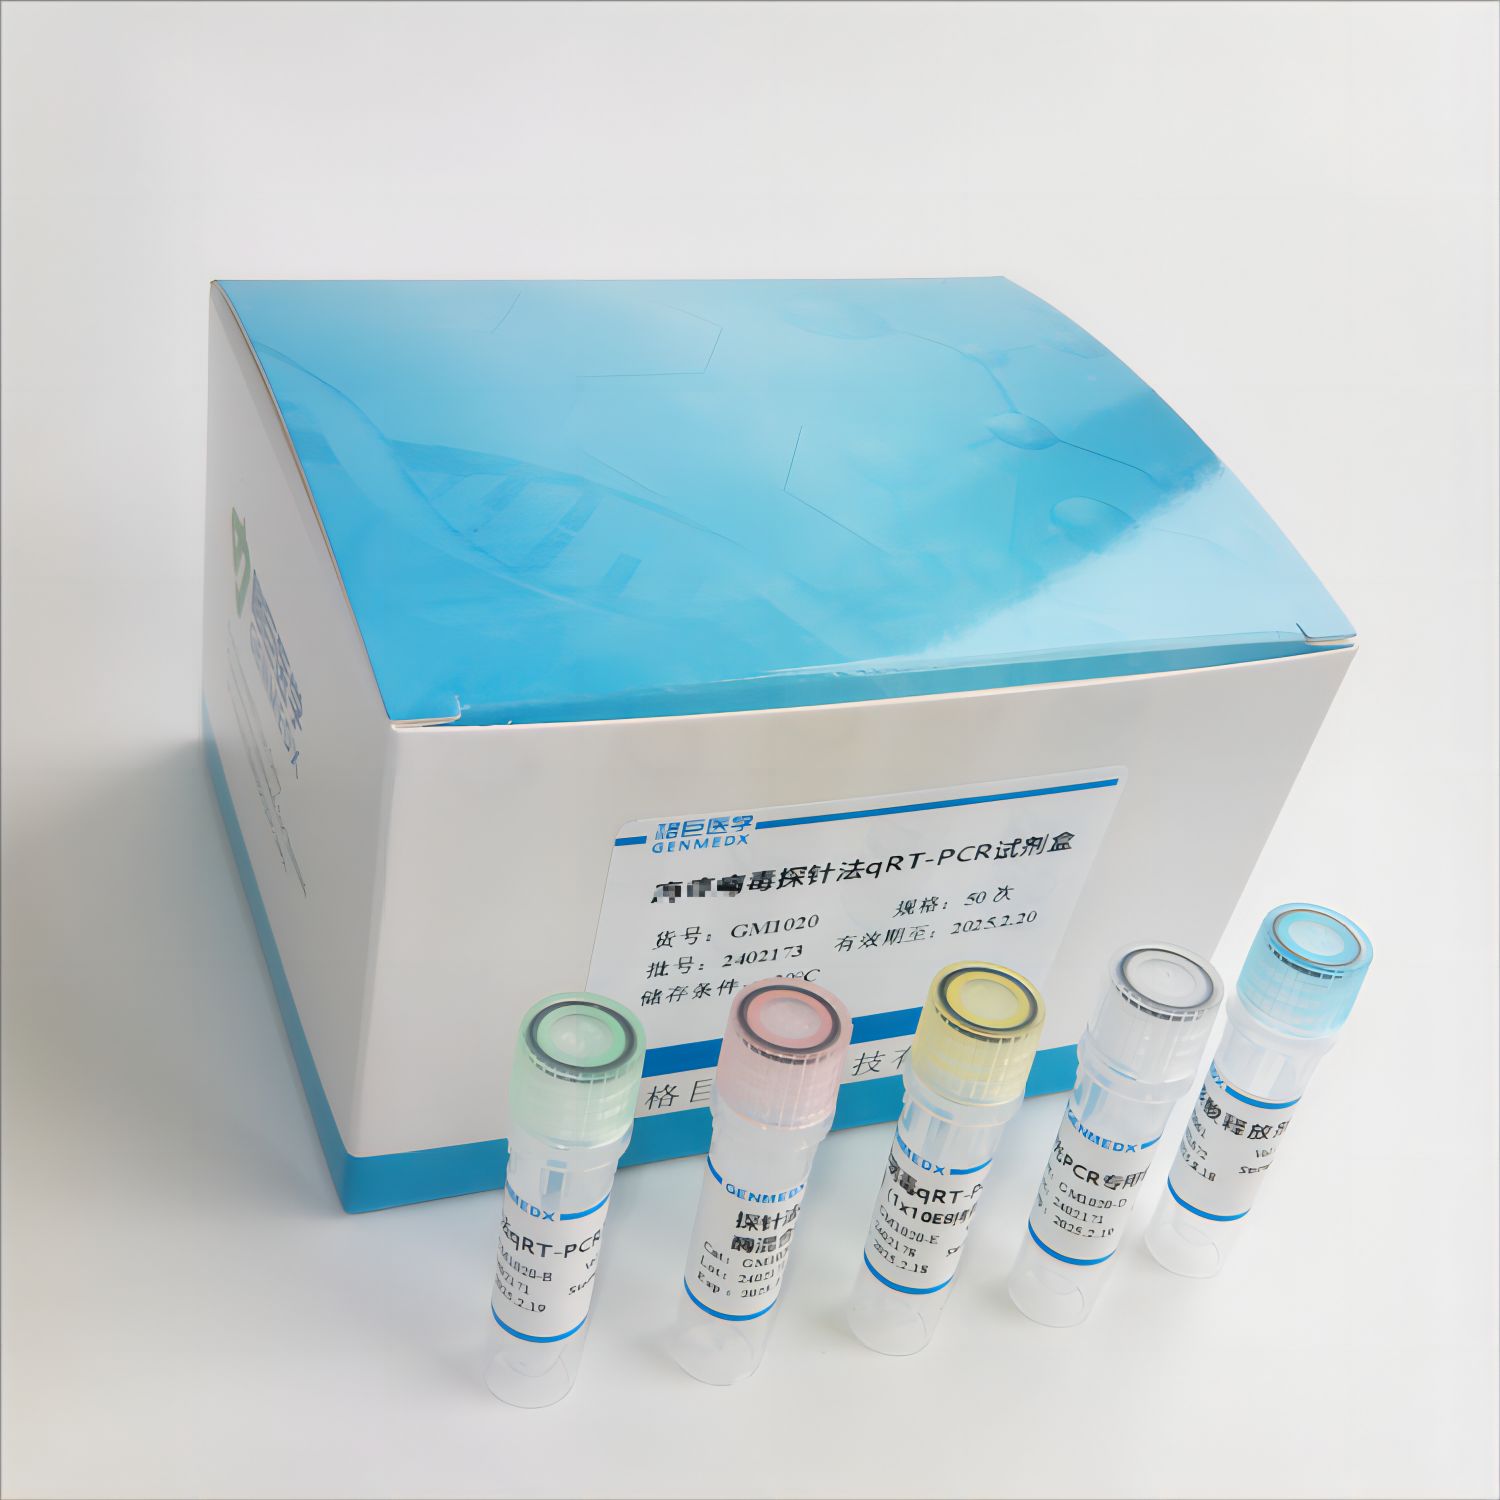 破伤风梭菌探针法荧光定量PCR试剂盒